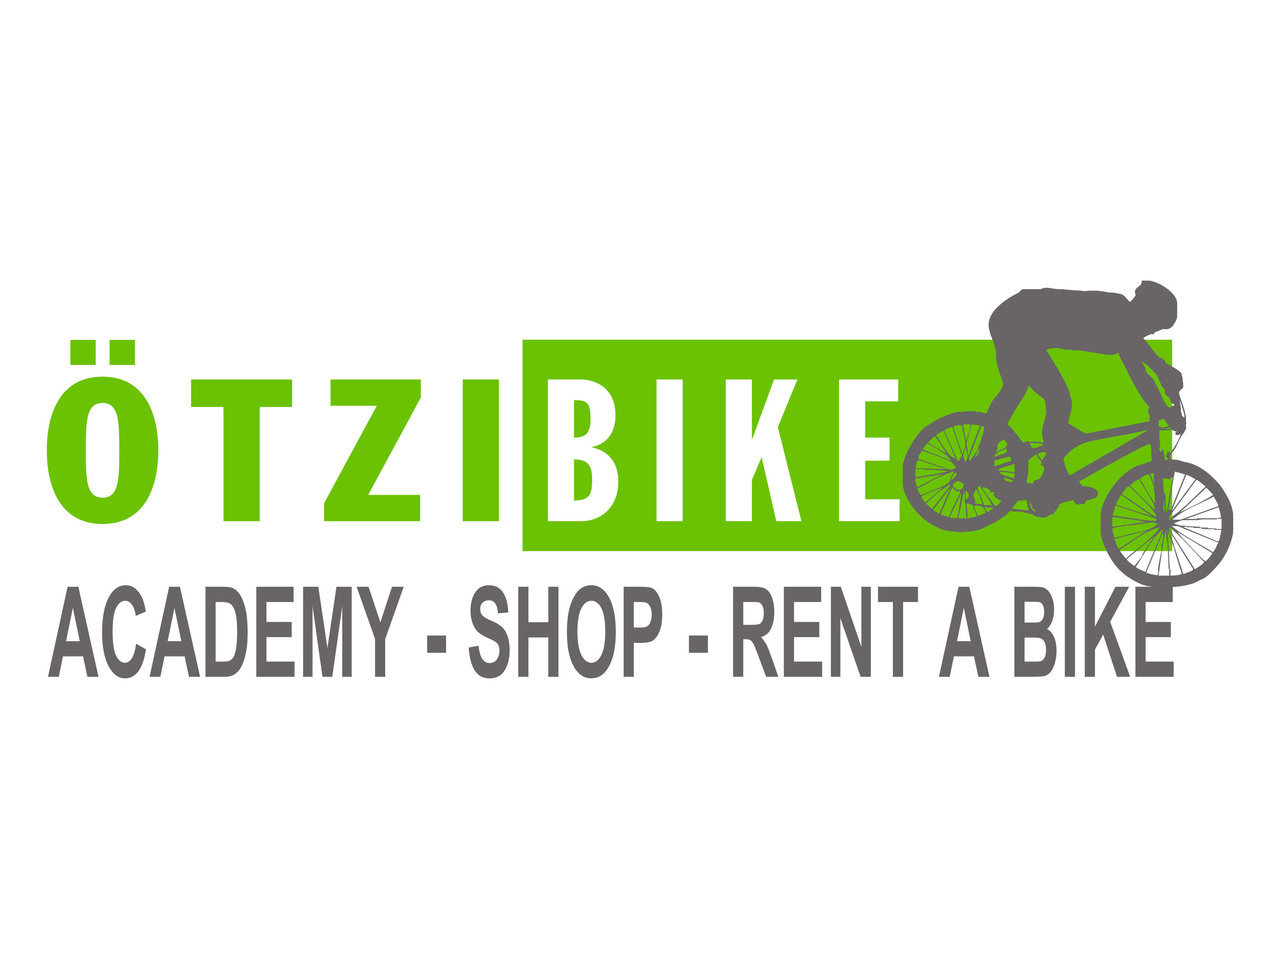 Die Ötzibike Academy bietet alles was das Bikerherz benötigt, angefangen von geführte Touren, reperaturen und Verkauf von Fahrädern in Naturns.